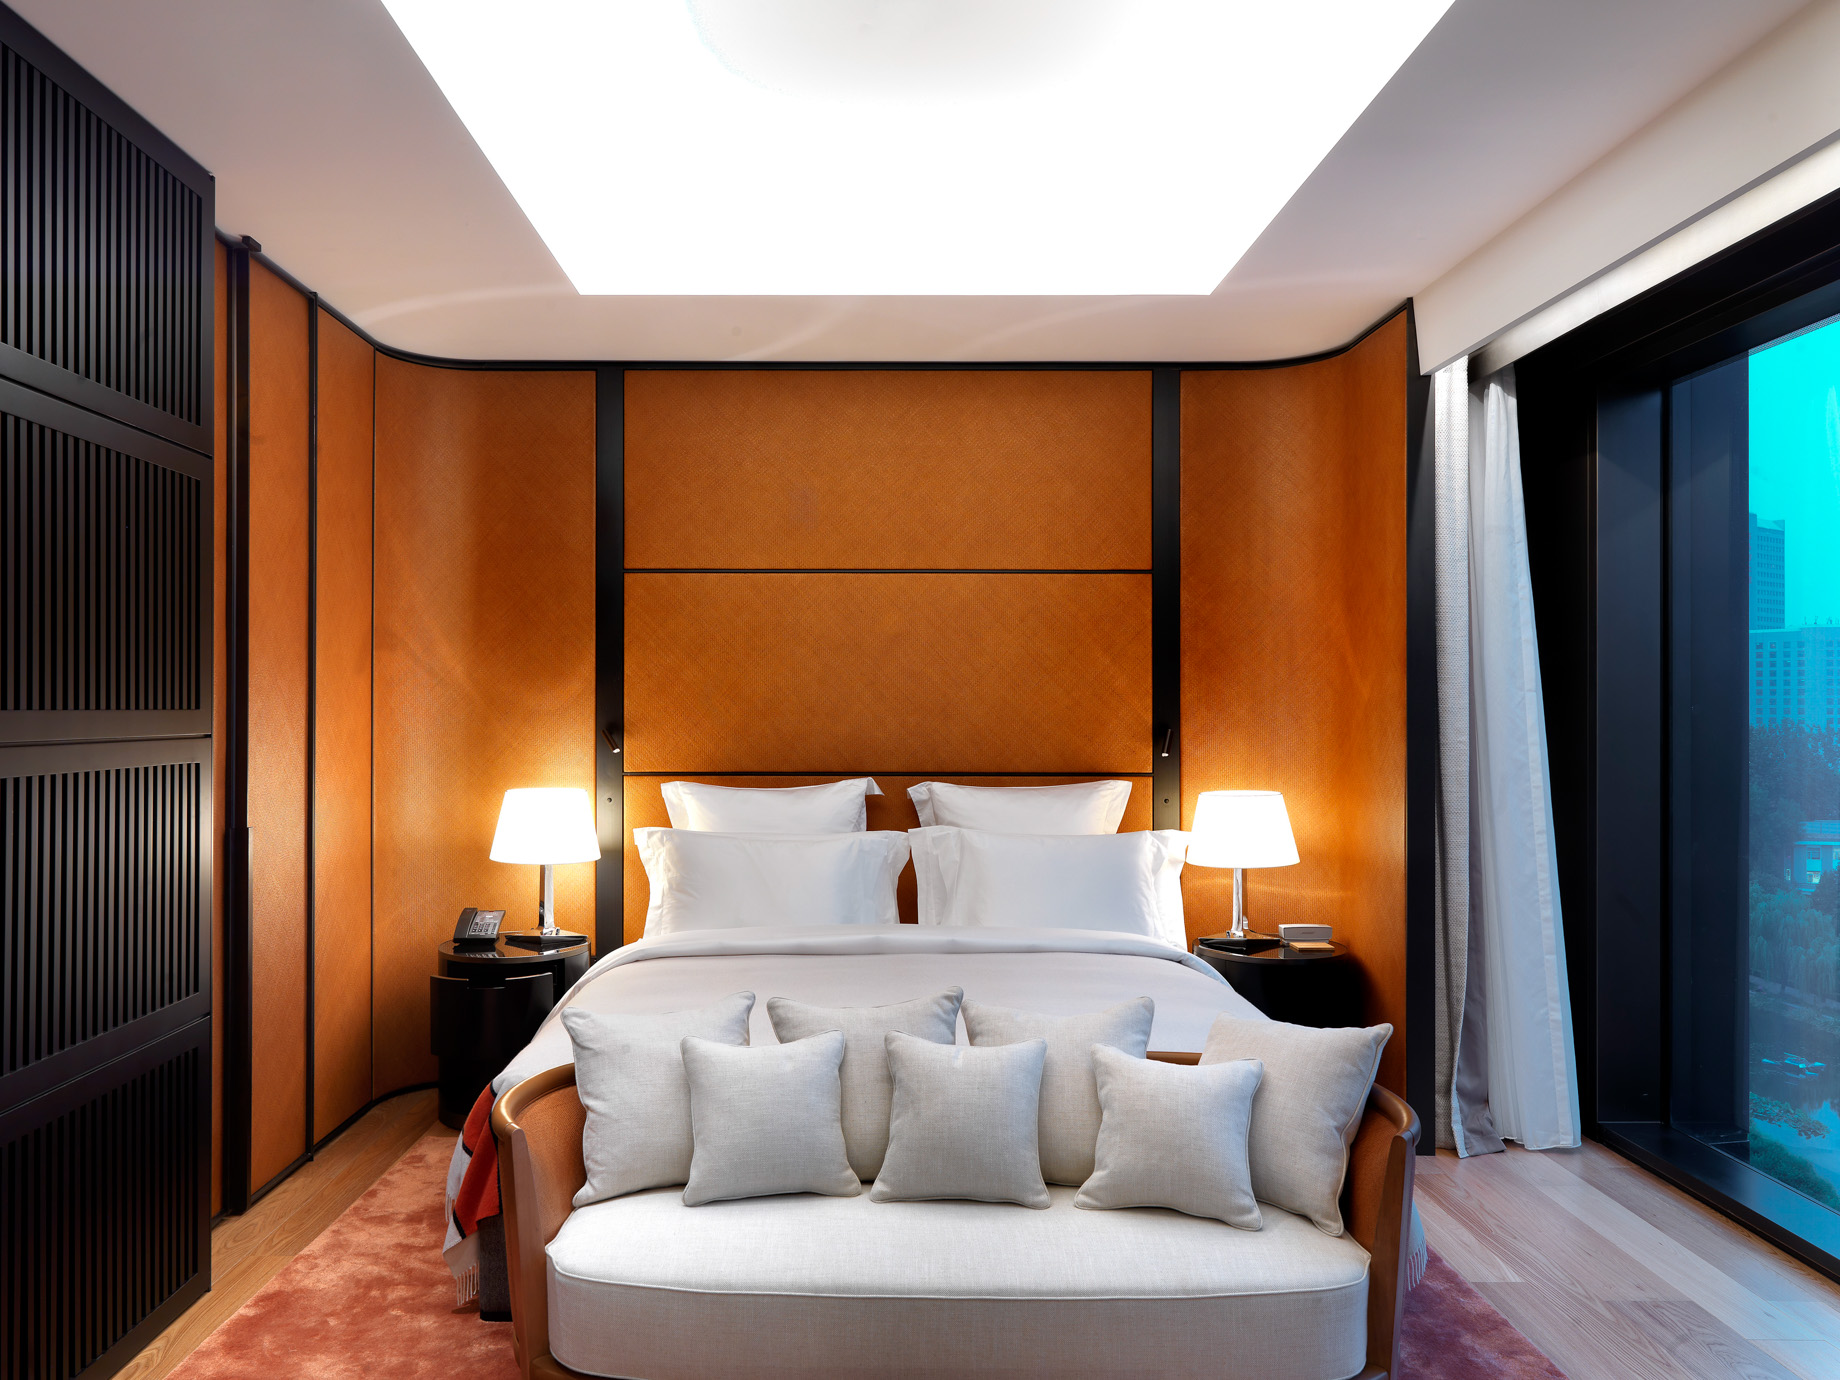 Bvlgari Hotel Beijing – Beijing, China – Guest Suite Bedroom